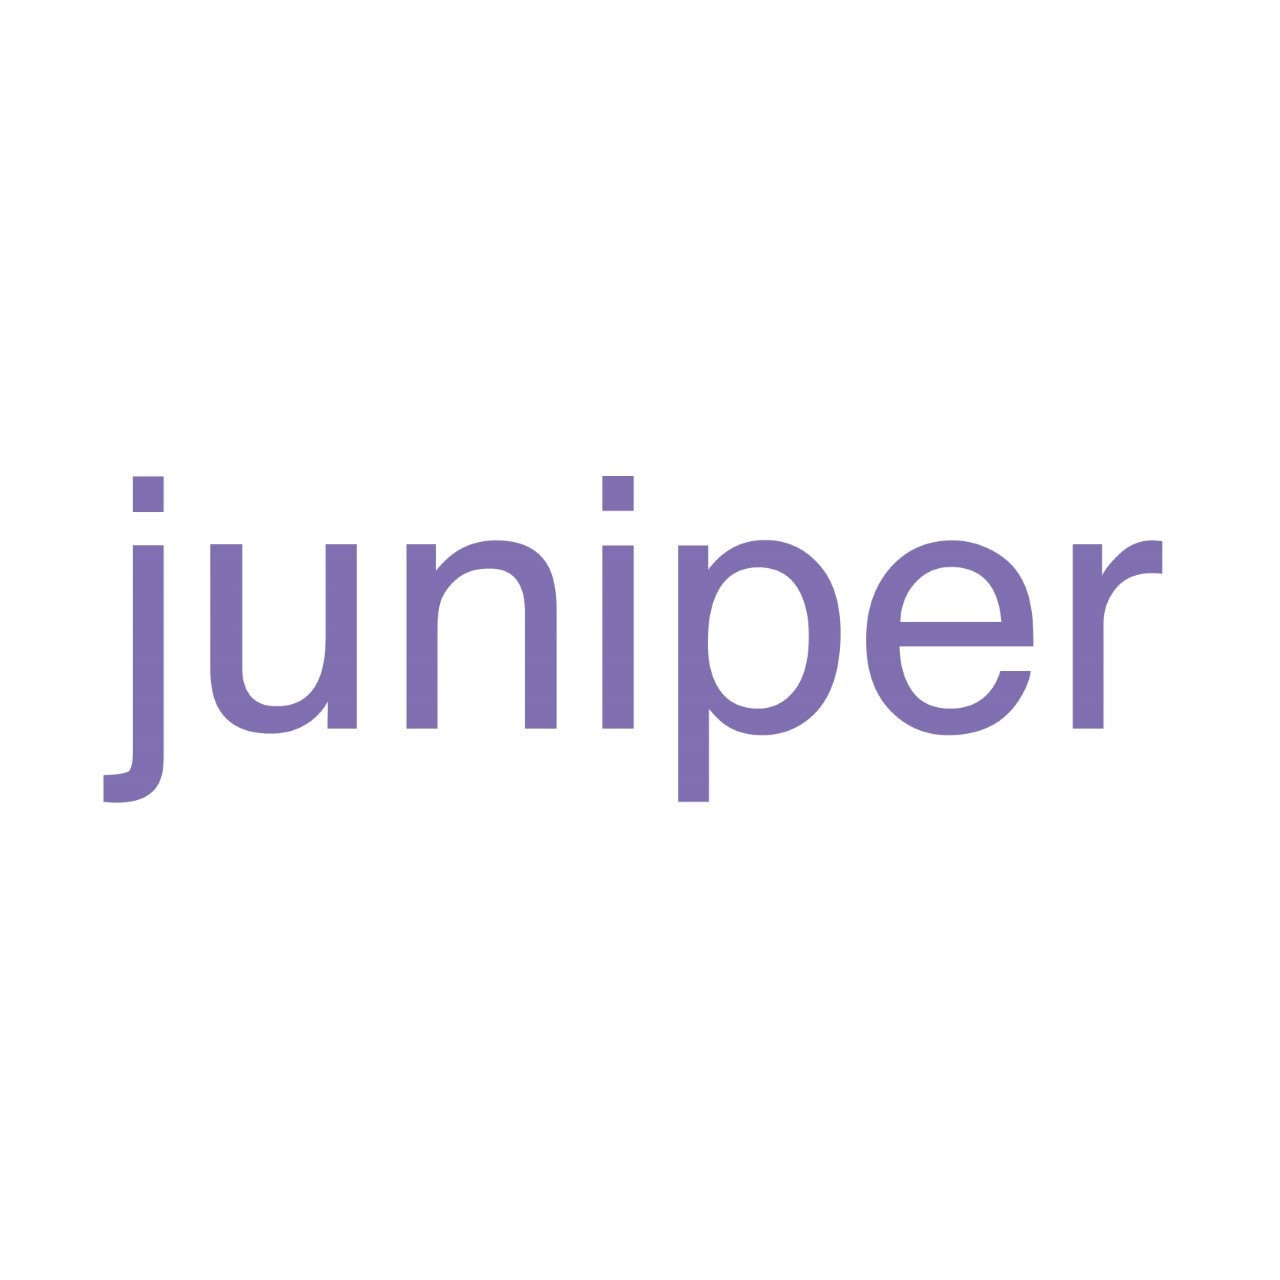 JuniperAccessories - Etsy UK